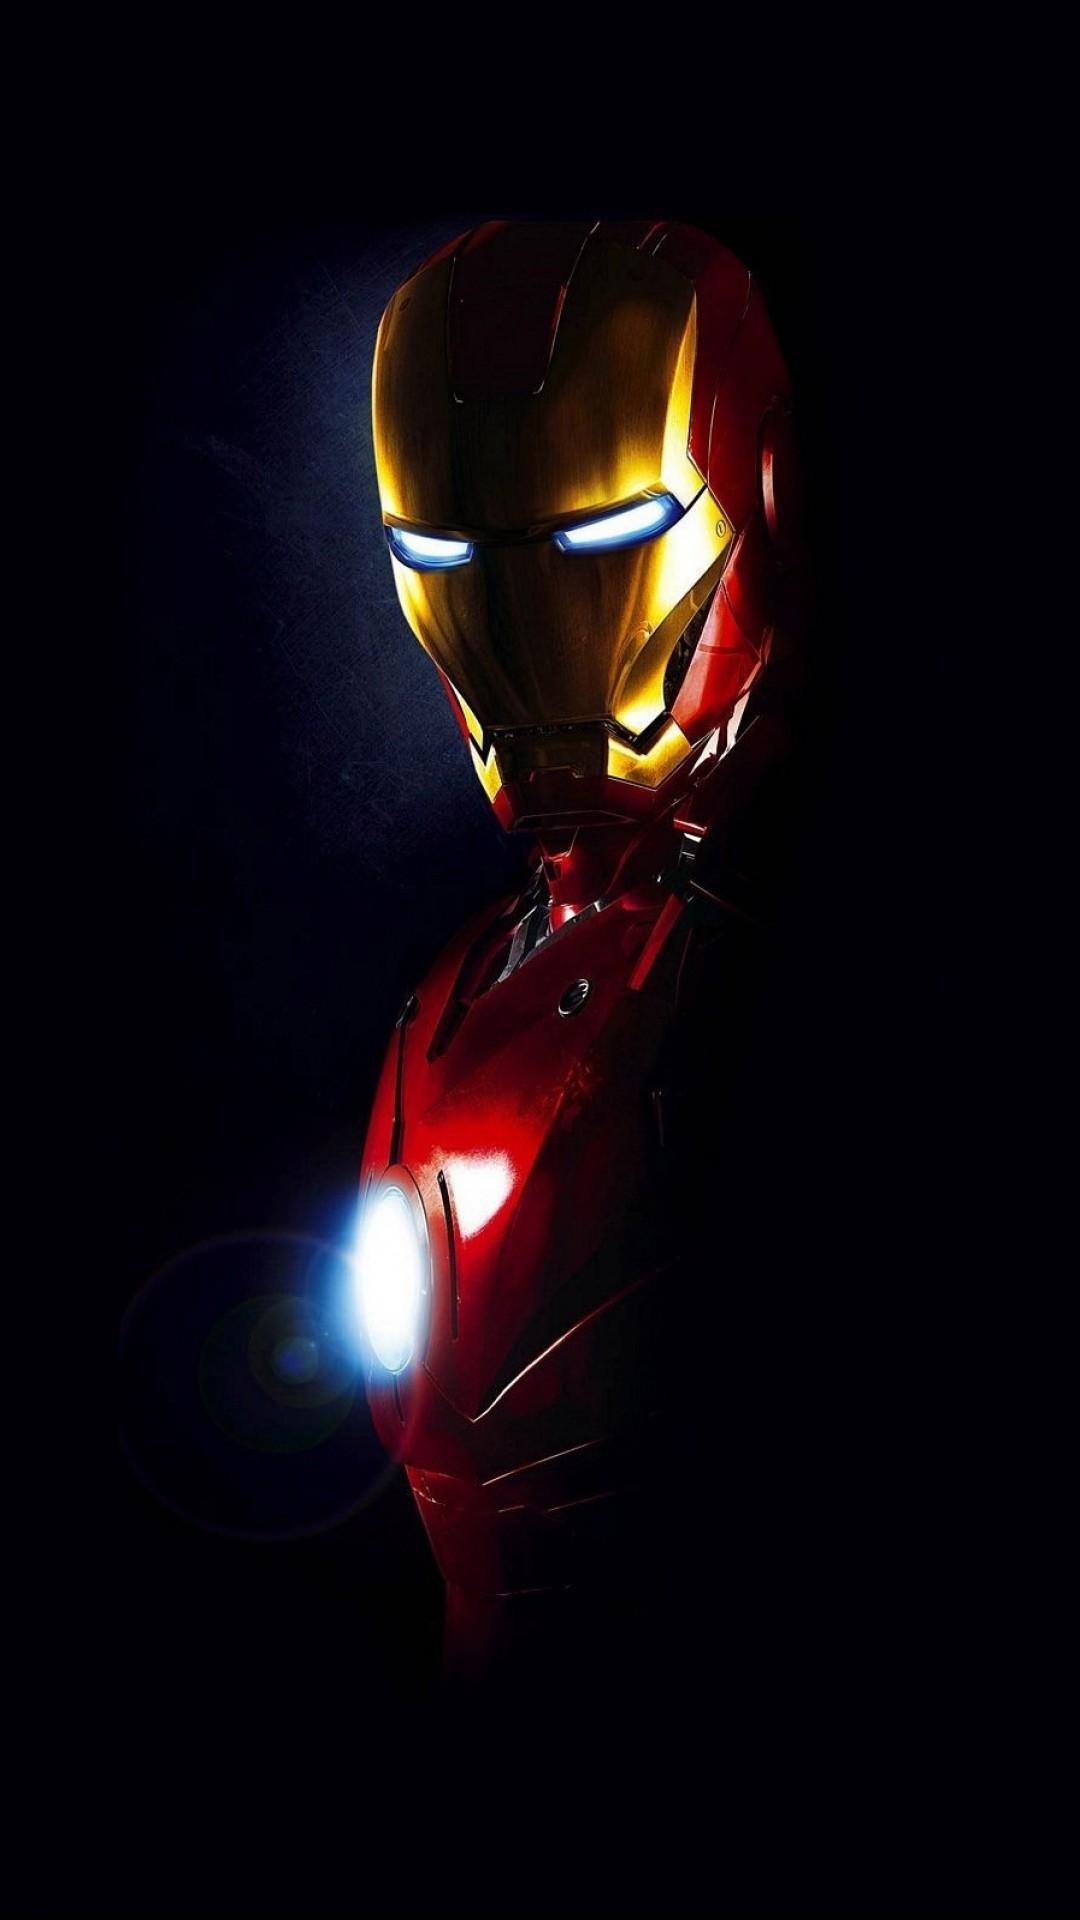 Nếu bạn đang sở hữu chiếc điện thoại iPhone 12, thì chắc chắn không thể bỏ qua bức ảnh nền Iron Man cực kỳ đáng yêu này. Với hình ảnh Iron Man đeo mặt nạ và ngôi sao dưới đáy, bức ảnh này sẽ khiến bạn cảm thấy thực sự phấn khích khi sử dụng điện thoại!